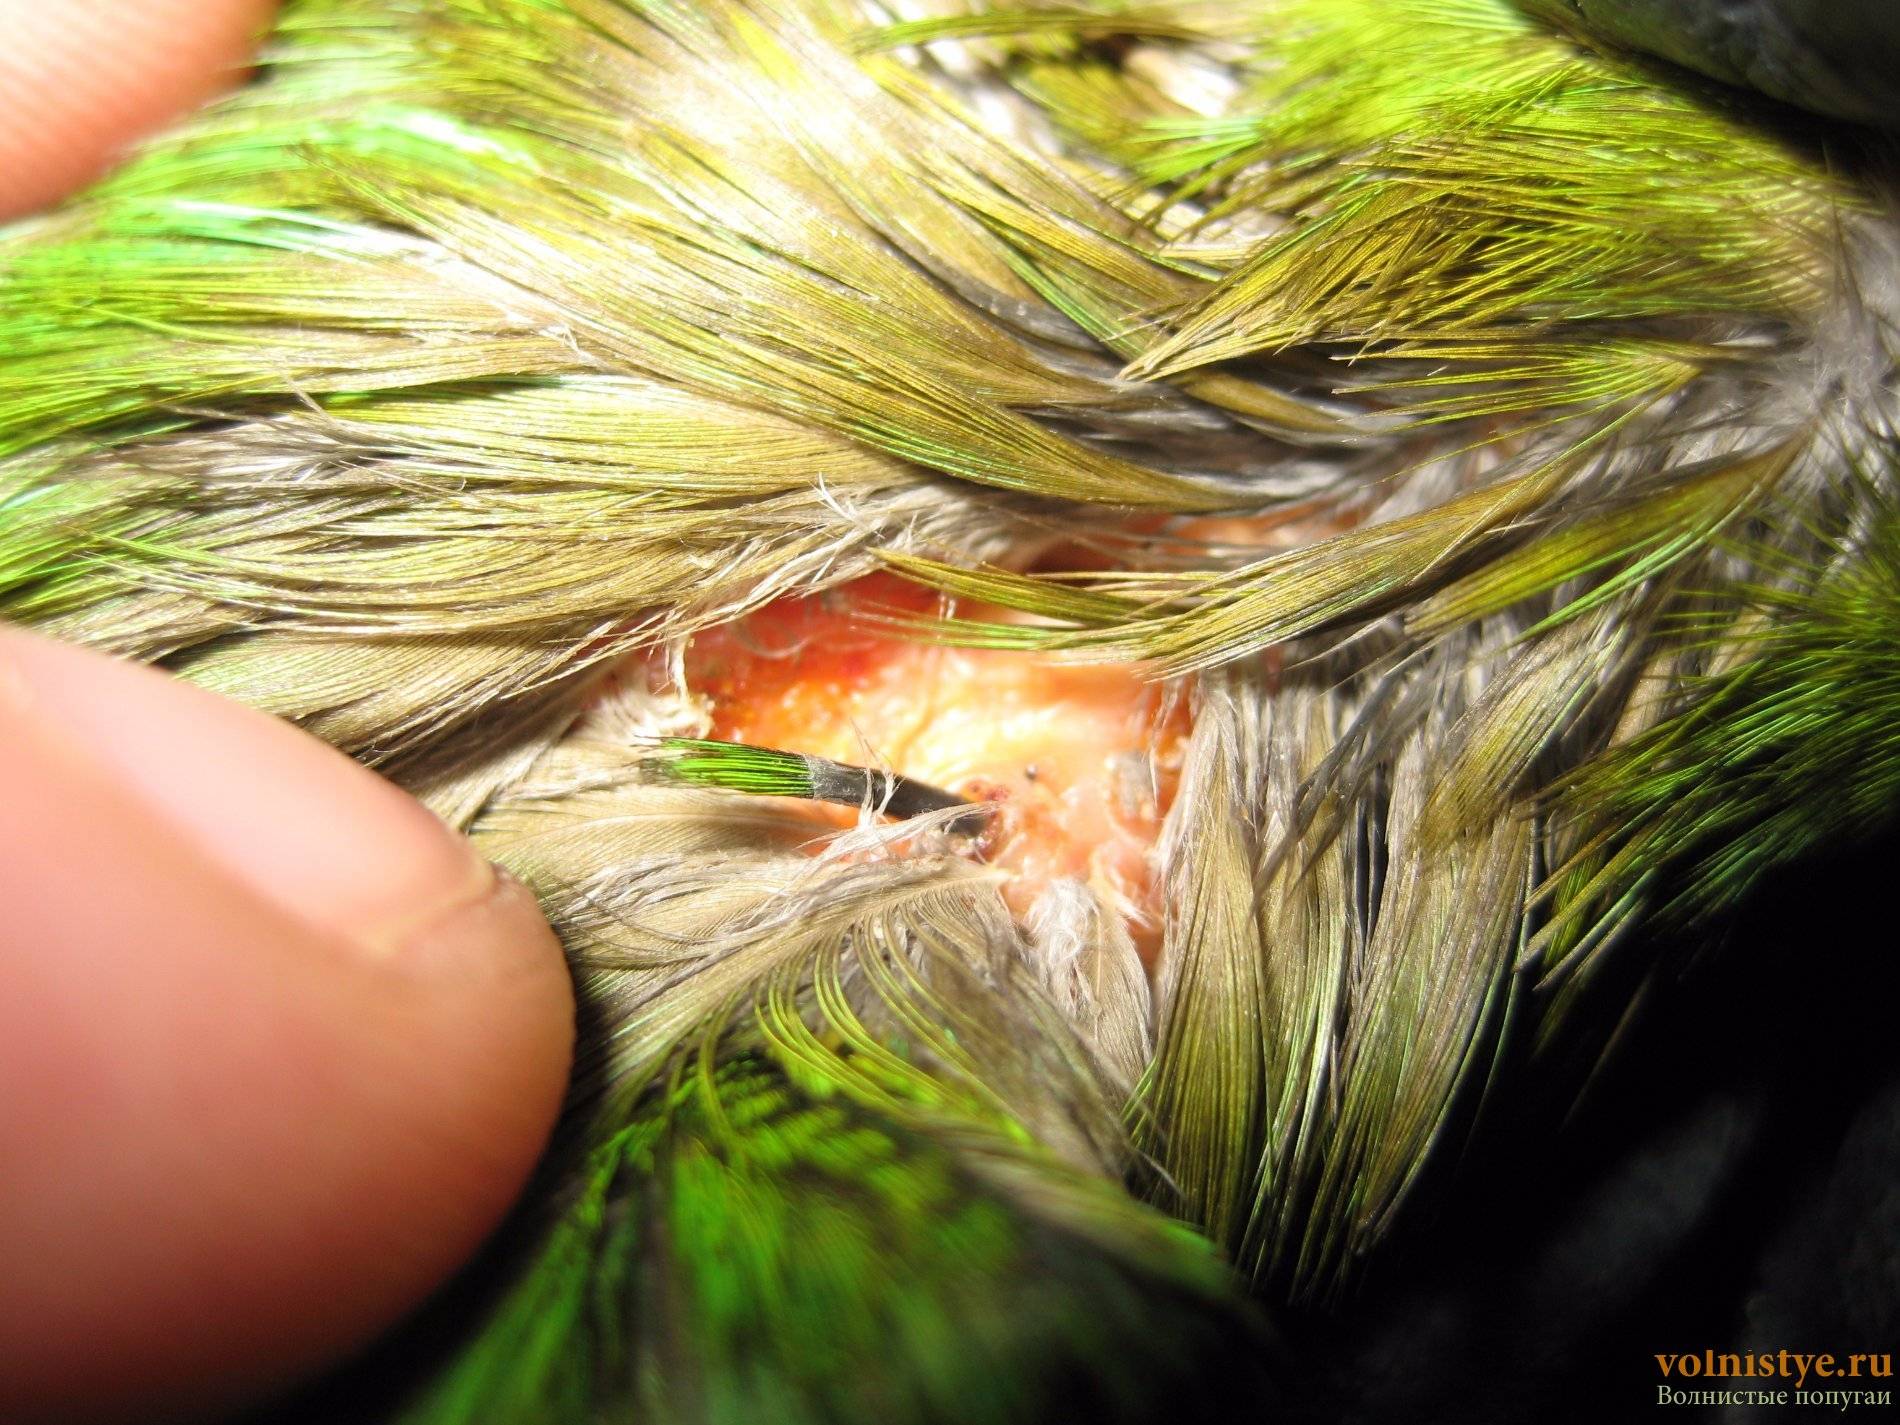 Волнистый попугай чешется: что делать и почему это бывает